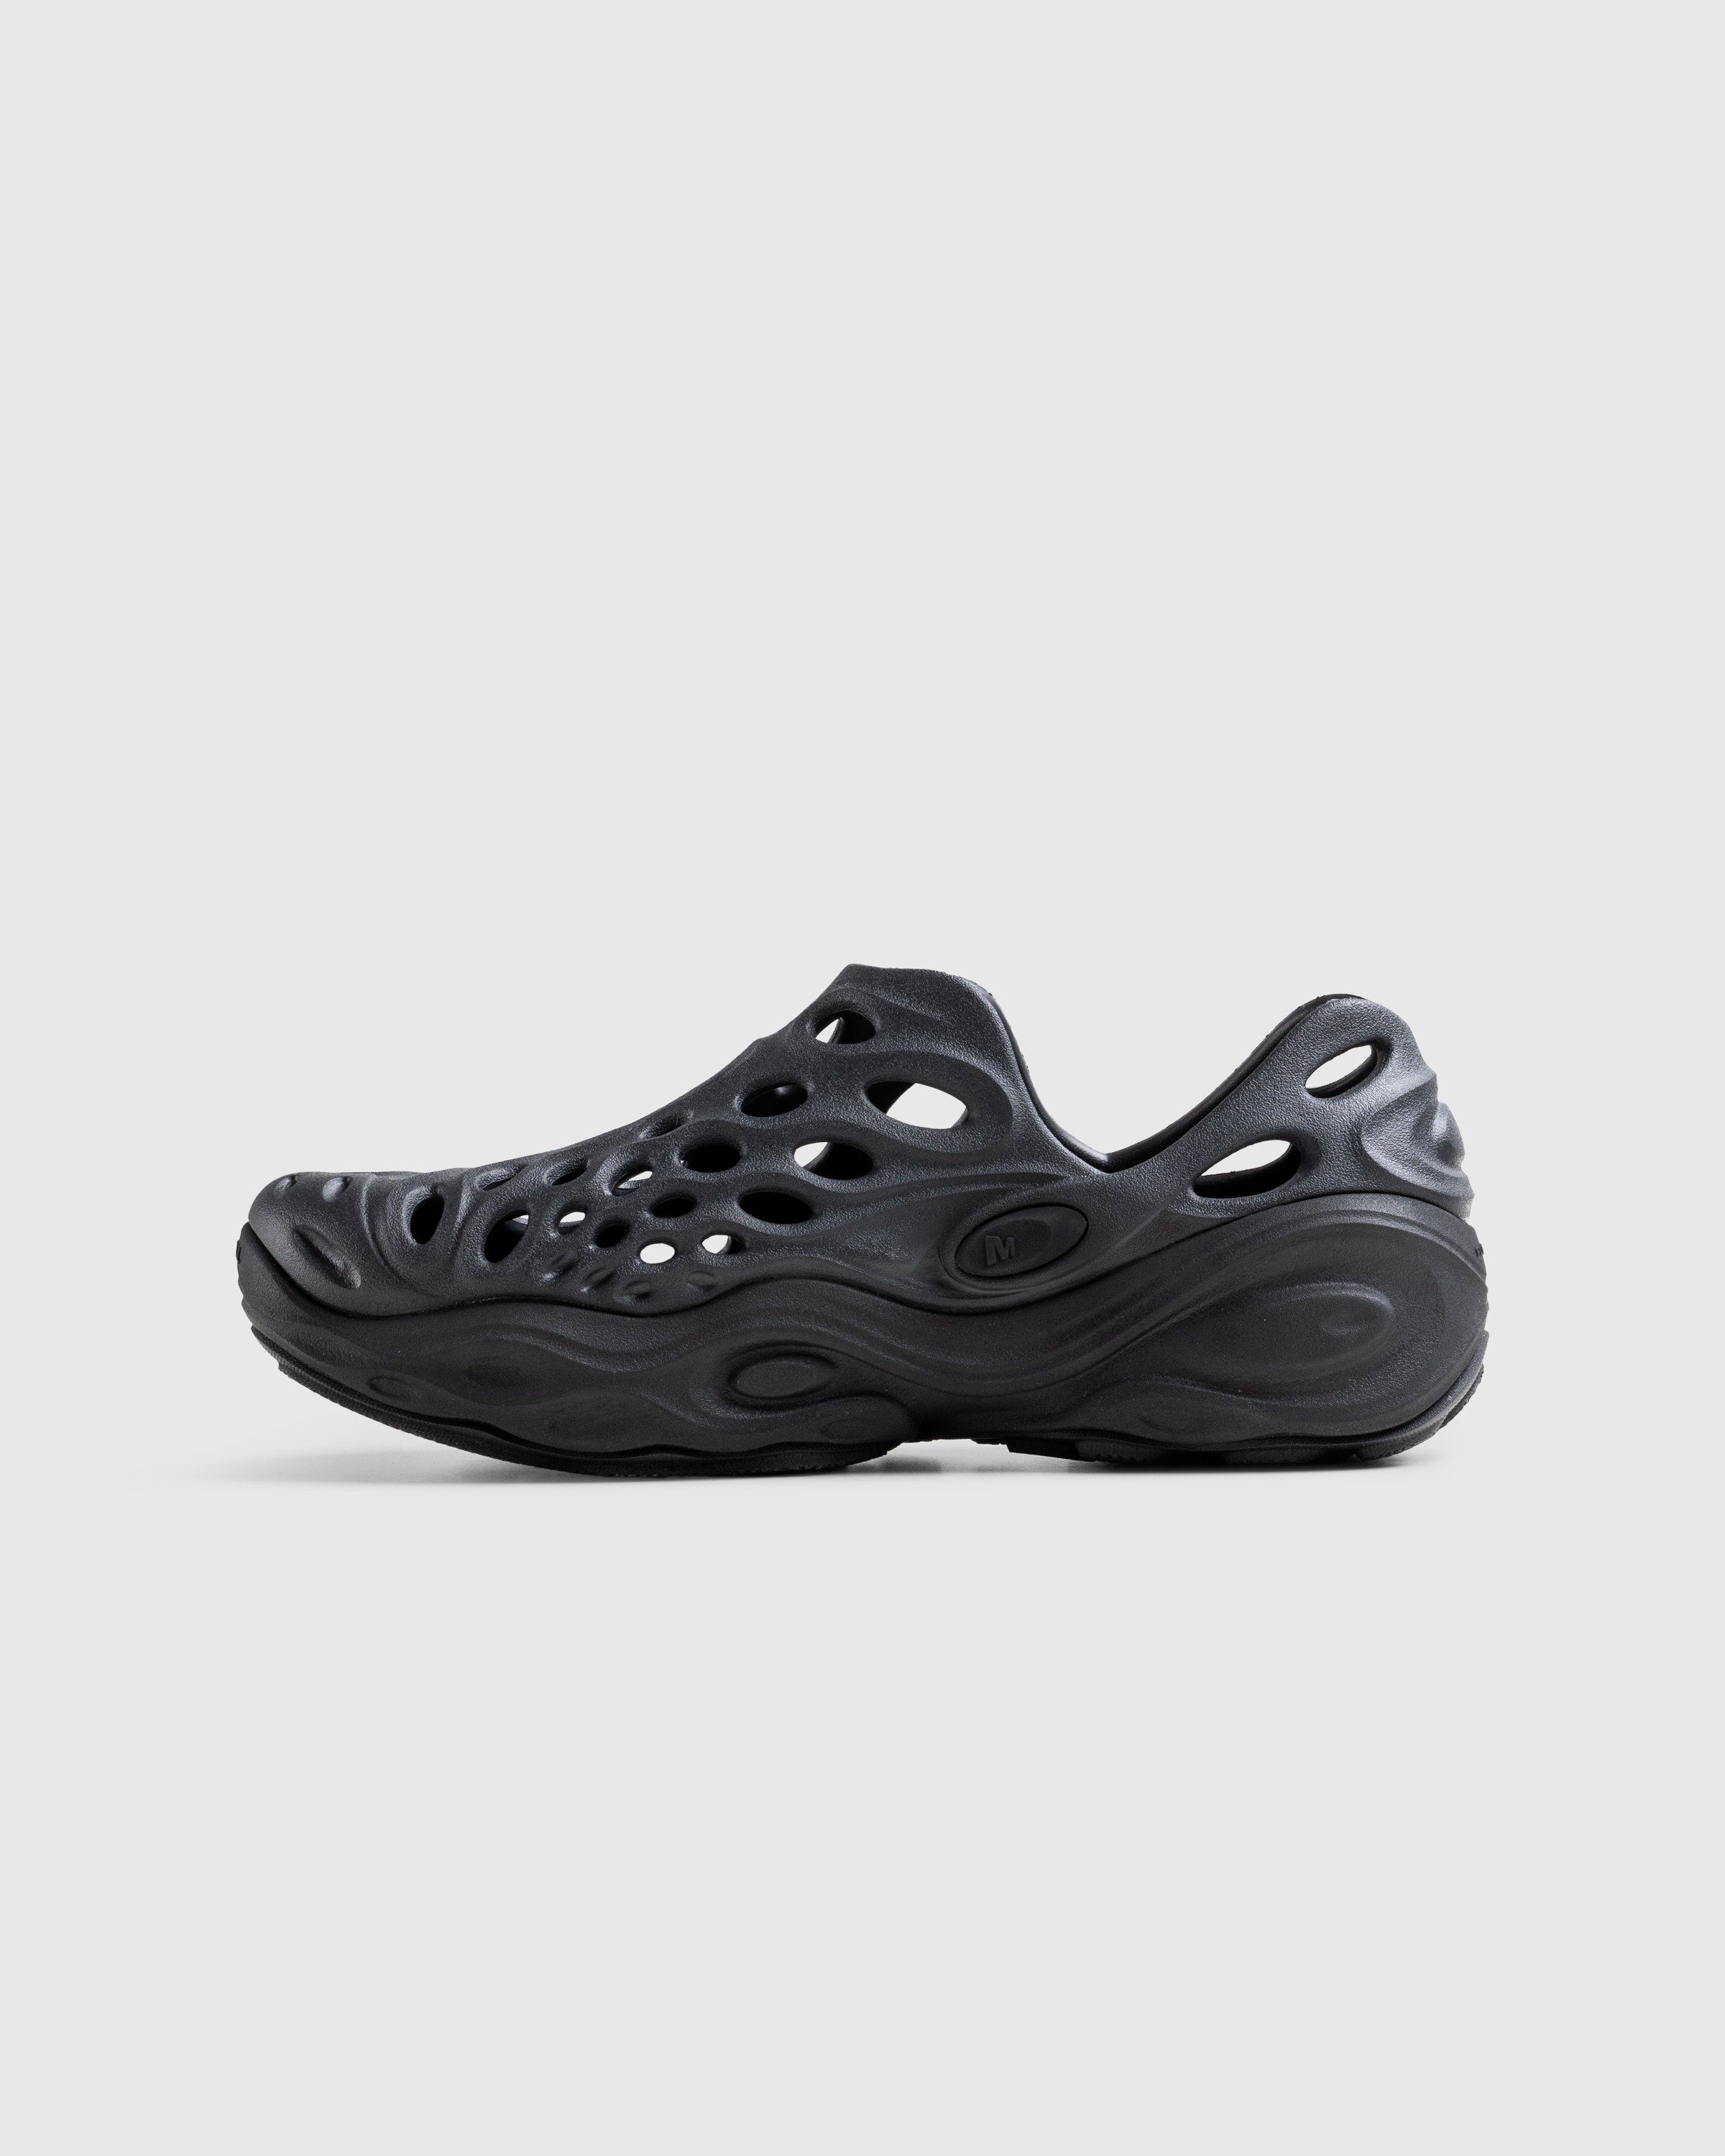 Merrell - HYDRO NEXT GEN MOC SE/TRIPLE BLACK - Footwear - Black - Image 2